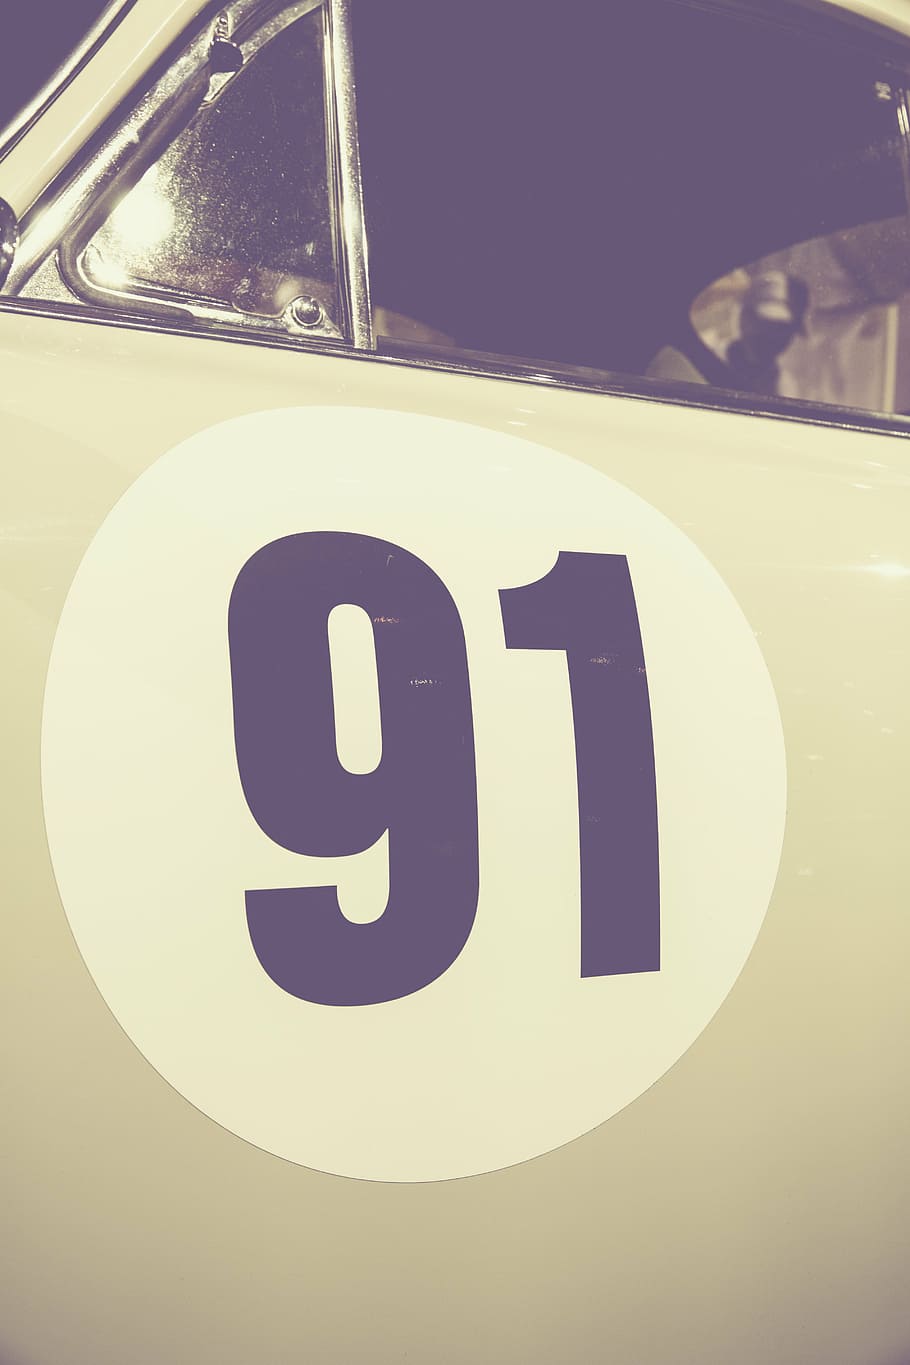 number, characters, auto, pkw, classic, oldtimer, porsche, 356, 91, door